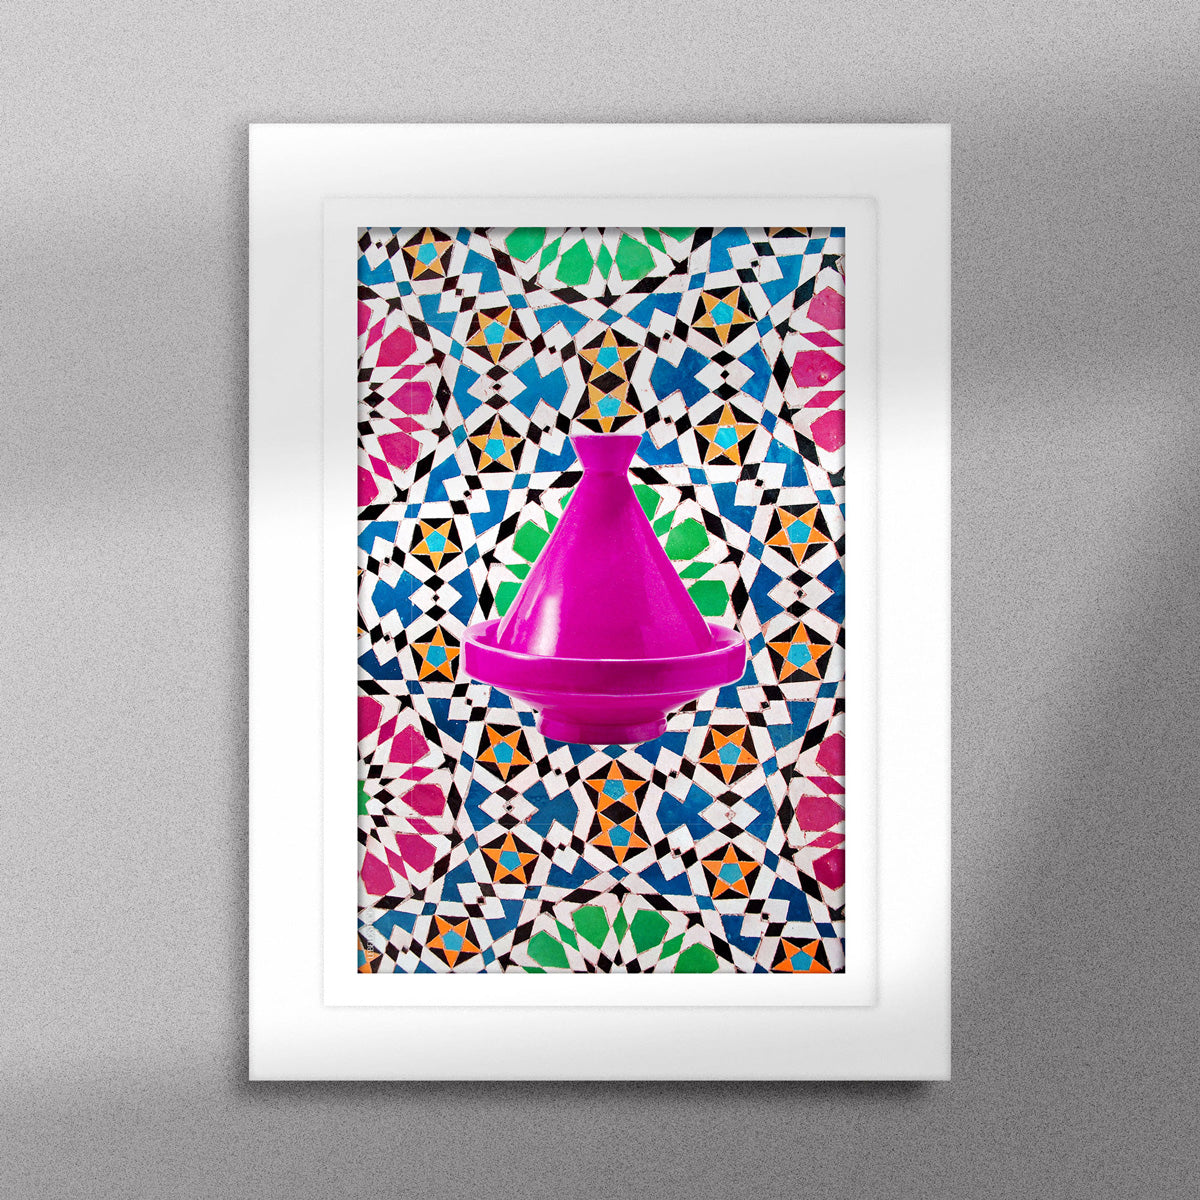 Tableau décoratif d'un tagine marocain en rose, sur un fond de zellige marocain coloré, encadré dans un cadre blanc - Format A5.